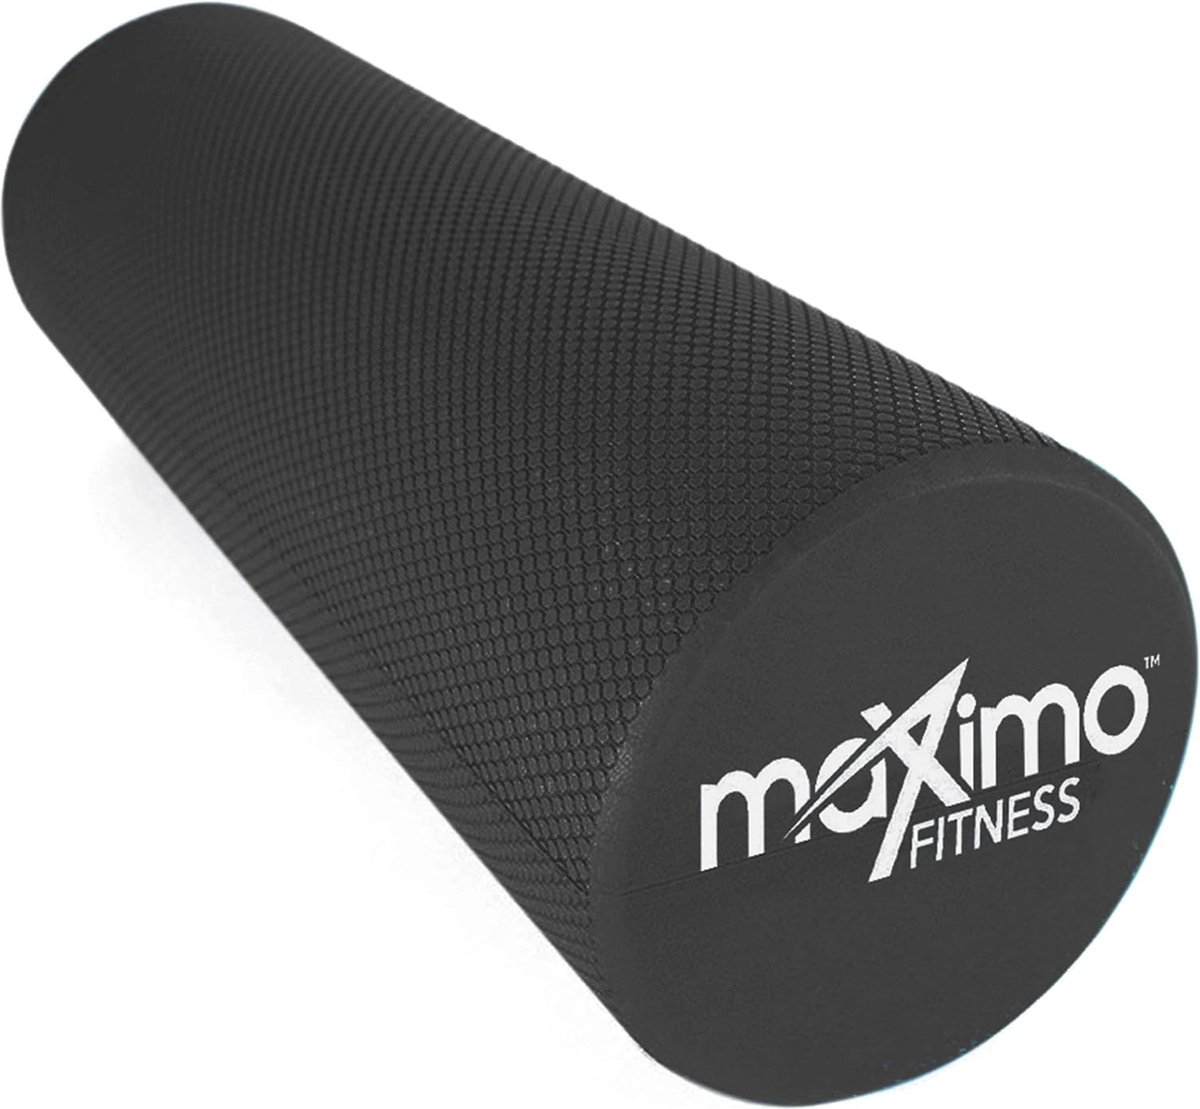 Fitness fasciaroller voor wervelkolom en rug, benen, armen (45 x 15 cm) - medium harde massageroller voor yoga, pilates, regeneratie na het sporten